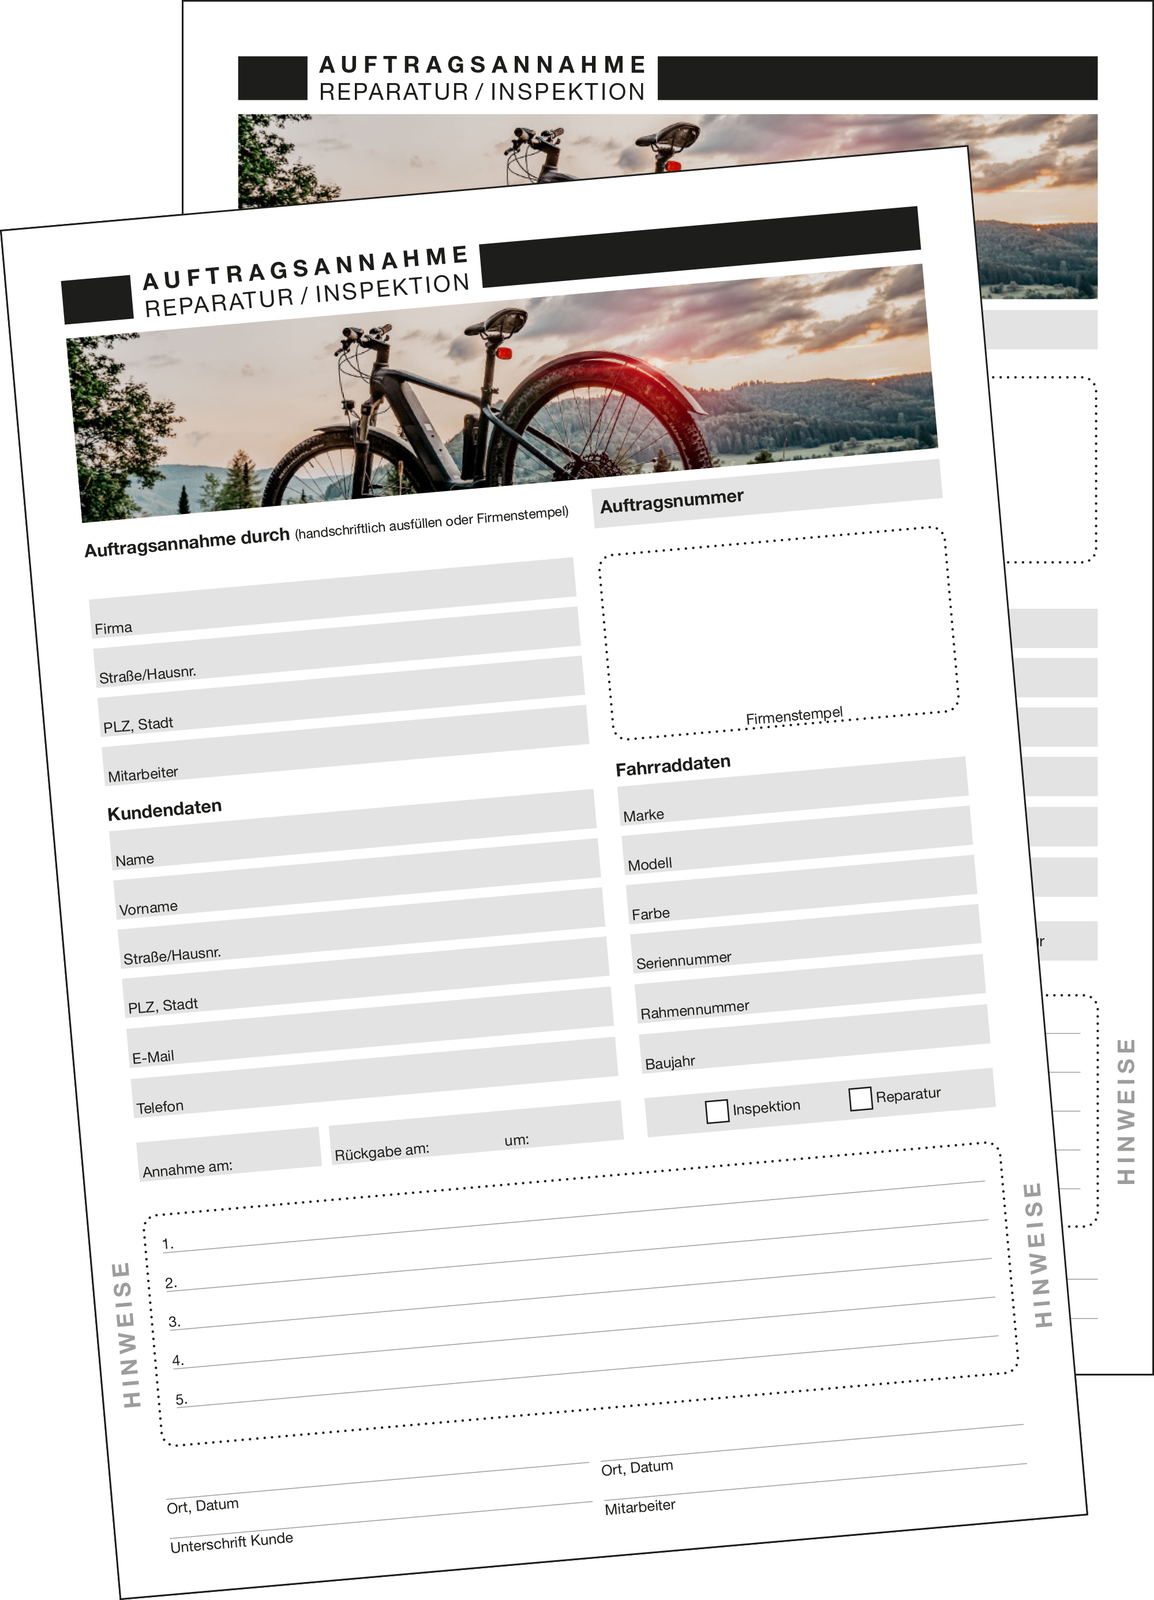 9036-00182 - Formular Auftragsannahme Fahrradreparatur